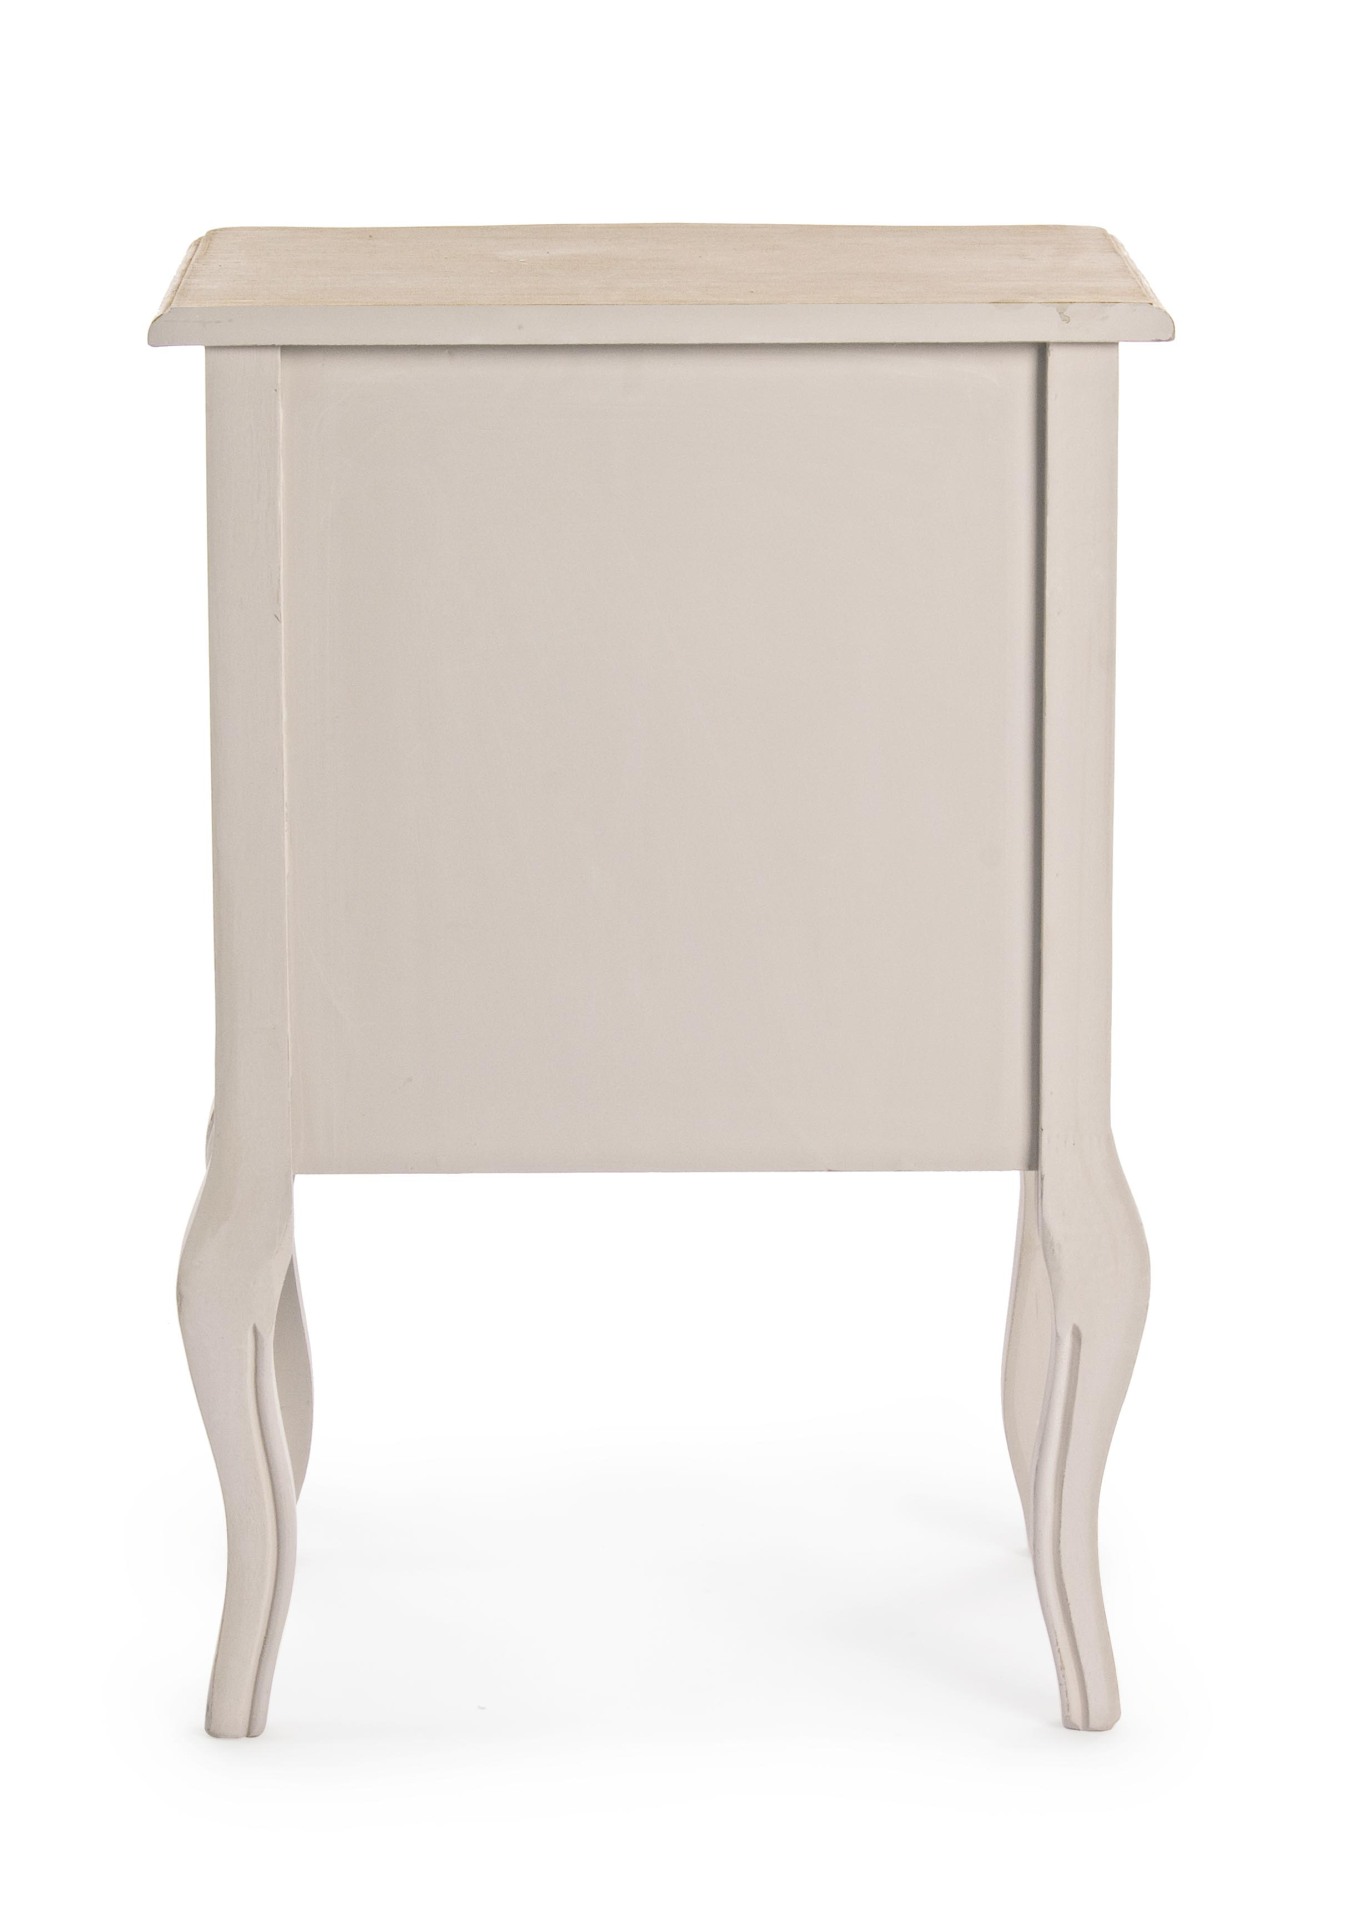 Der Nachttisch Clarissa überzeugt mit seinem klassischen Design. Gefertigt wurde er aus Paulowniaholz, welches einen grauen Farbton besitzt. Das Gestell ist auch aus Paulowniaholz. Der Nachttisch verfügt über drei Schubladen. Die Breite beträgt 48 cm.